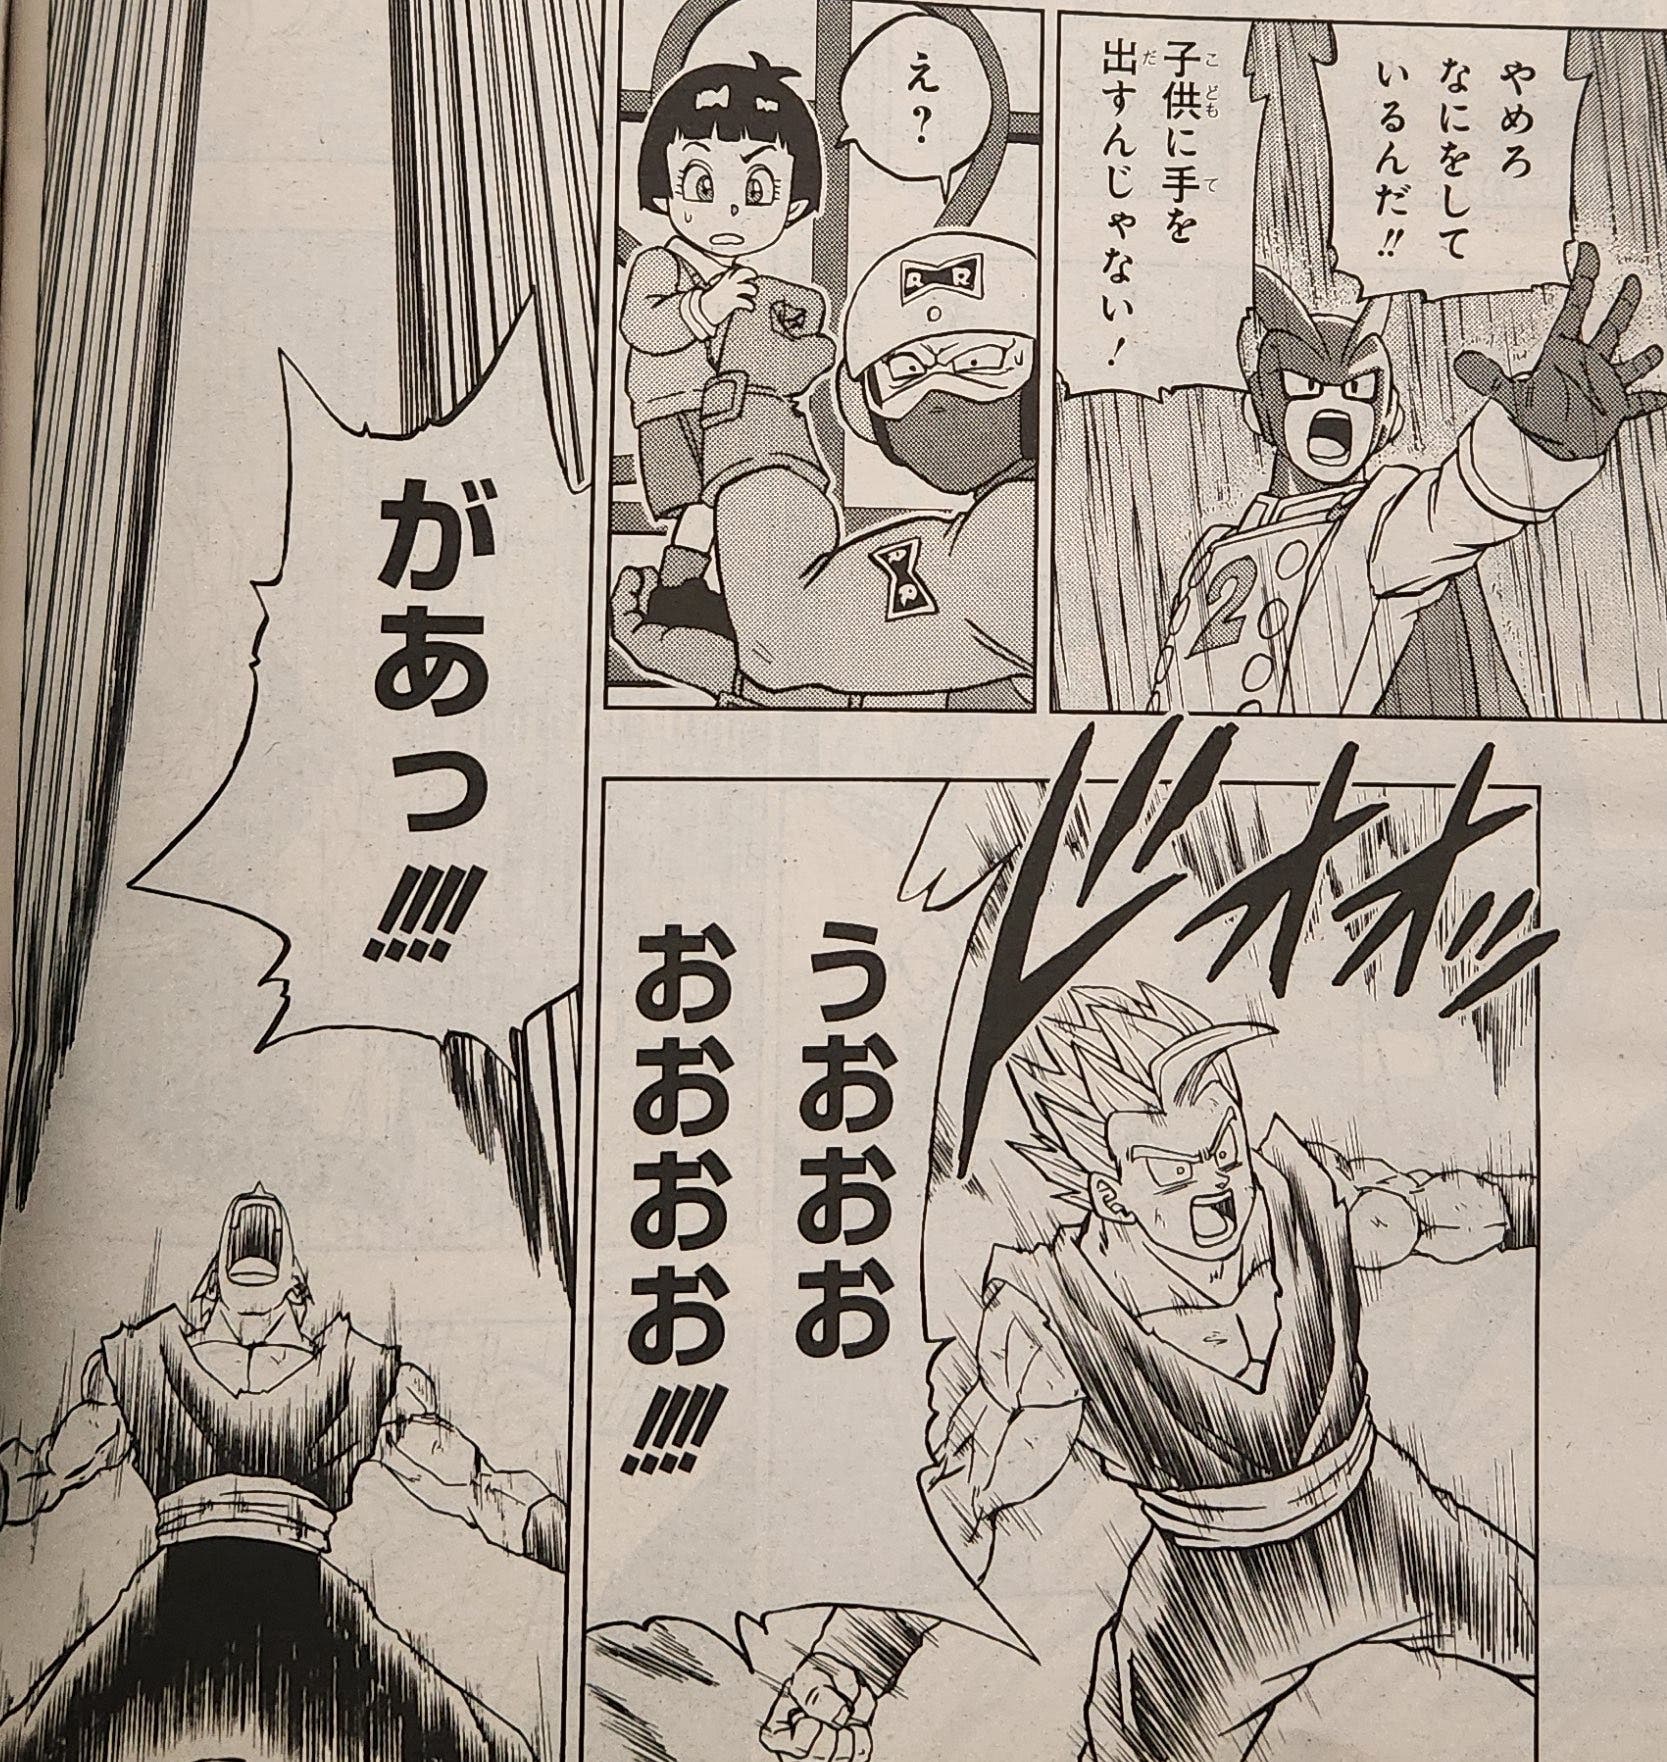 Poniball 超 - El capítulo 94 del manga de Dragon Ball Super supuso